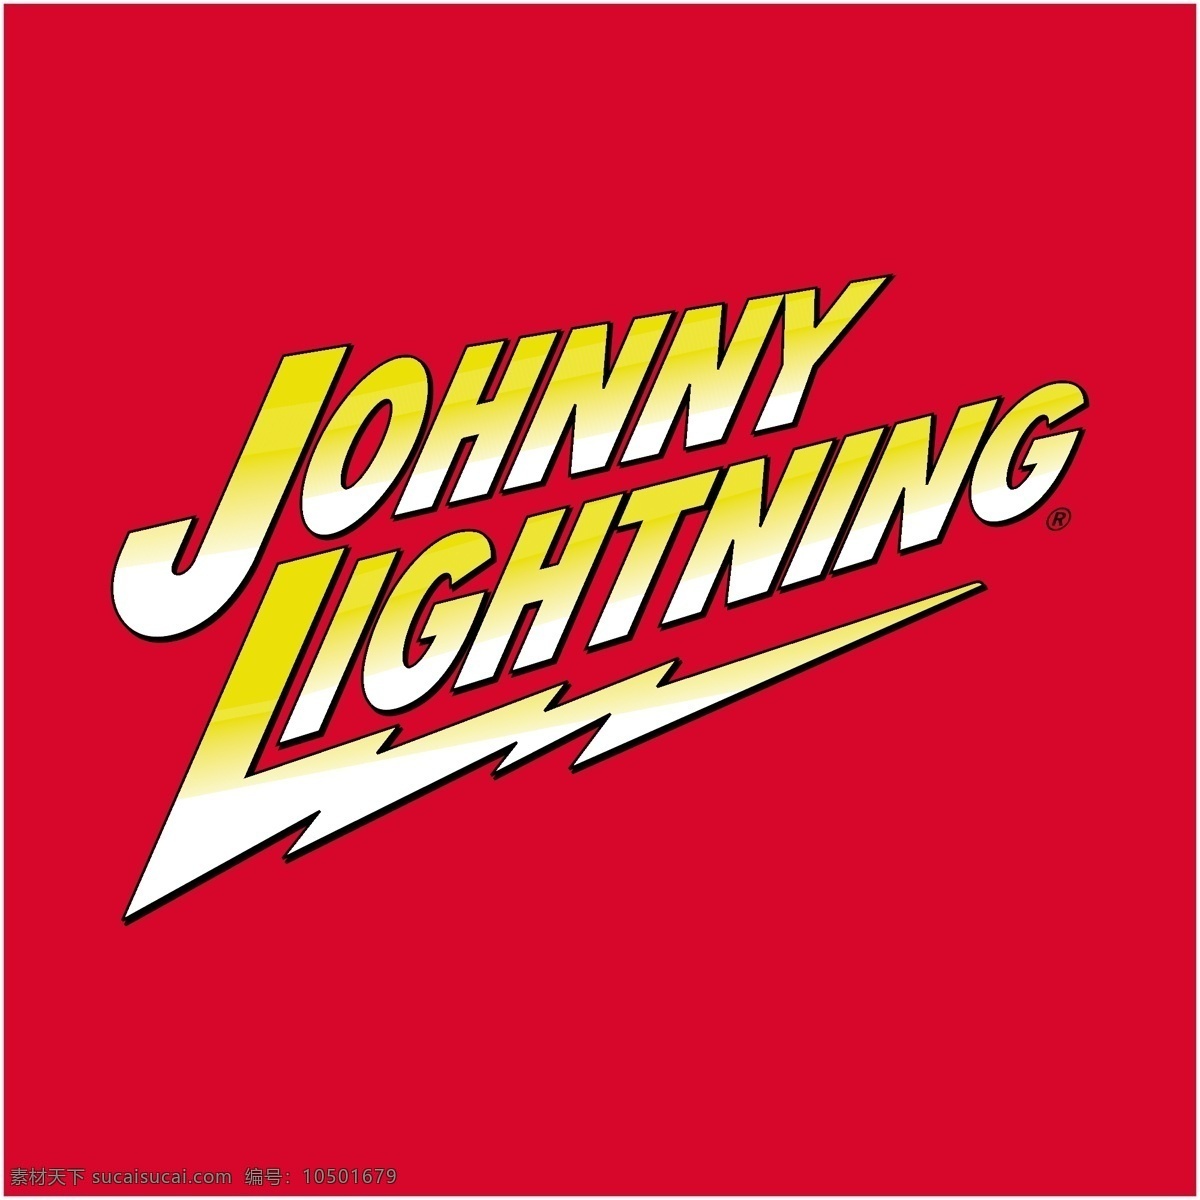 约翰尼闪电 矢量标志下载 免费矢量标识 商标 品牌标识 标识 矢量 免费 品牌 公司 粉色